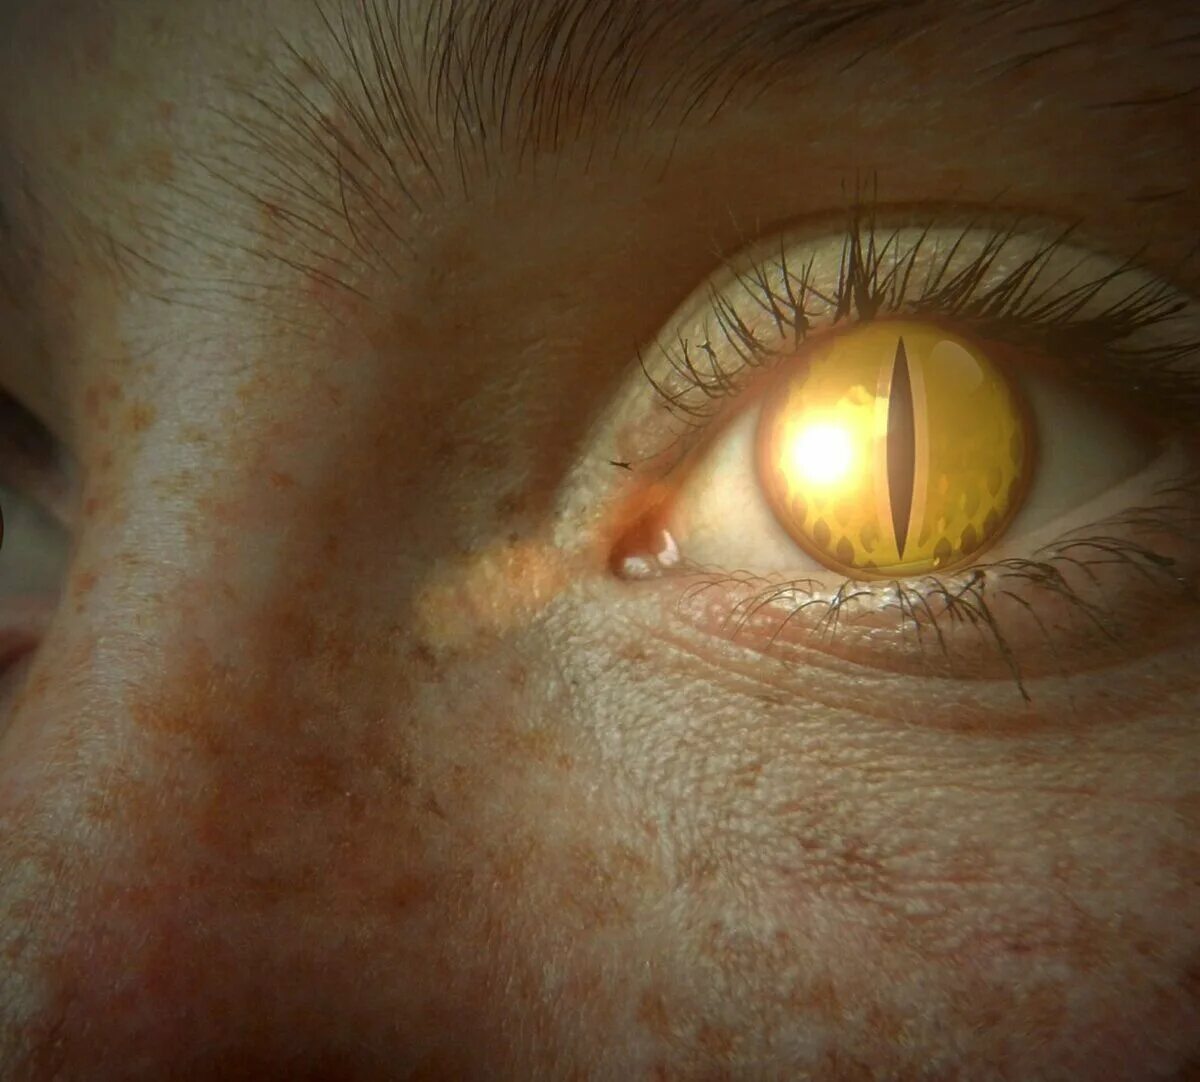 Желтый свет в глазах. Желтые глаза. Глаз человека. Желто янтарные глаза. Желтые глаза с вертикальным зрачком.